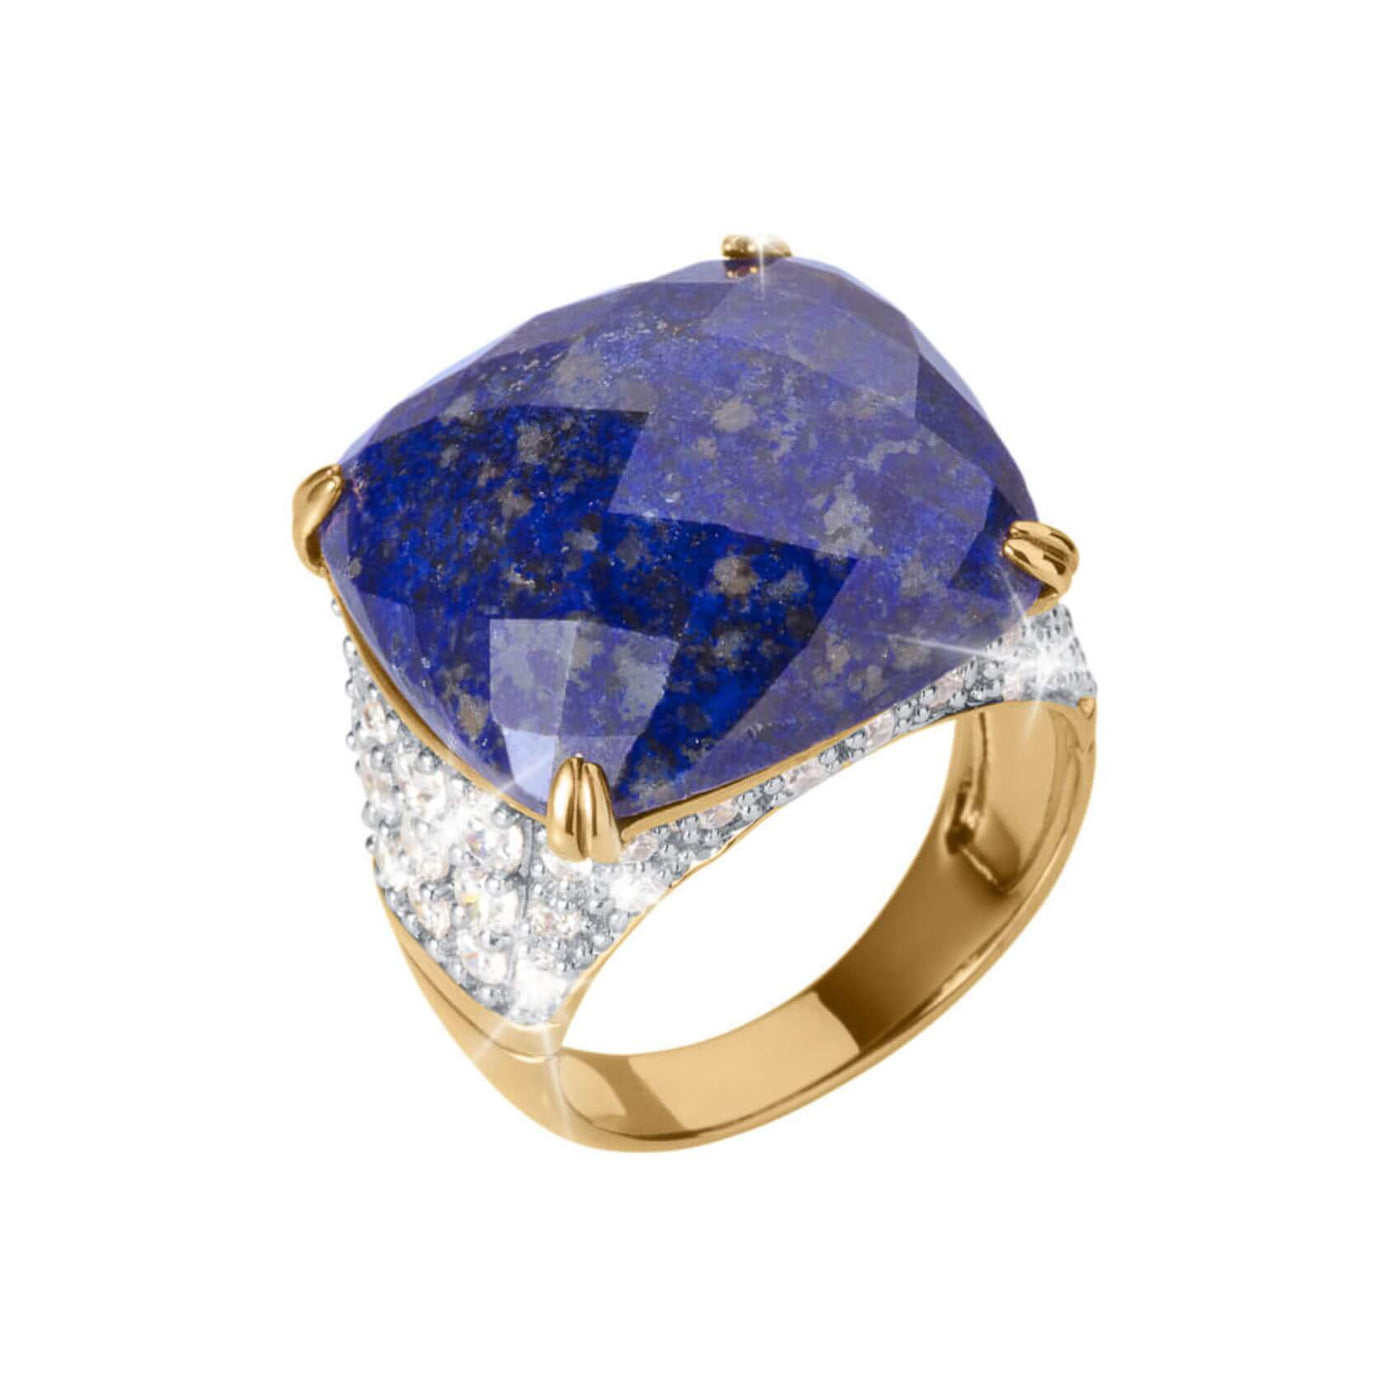 Daniel Steiger Lapis Lazuli Ladies Ring